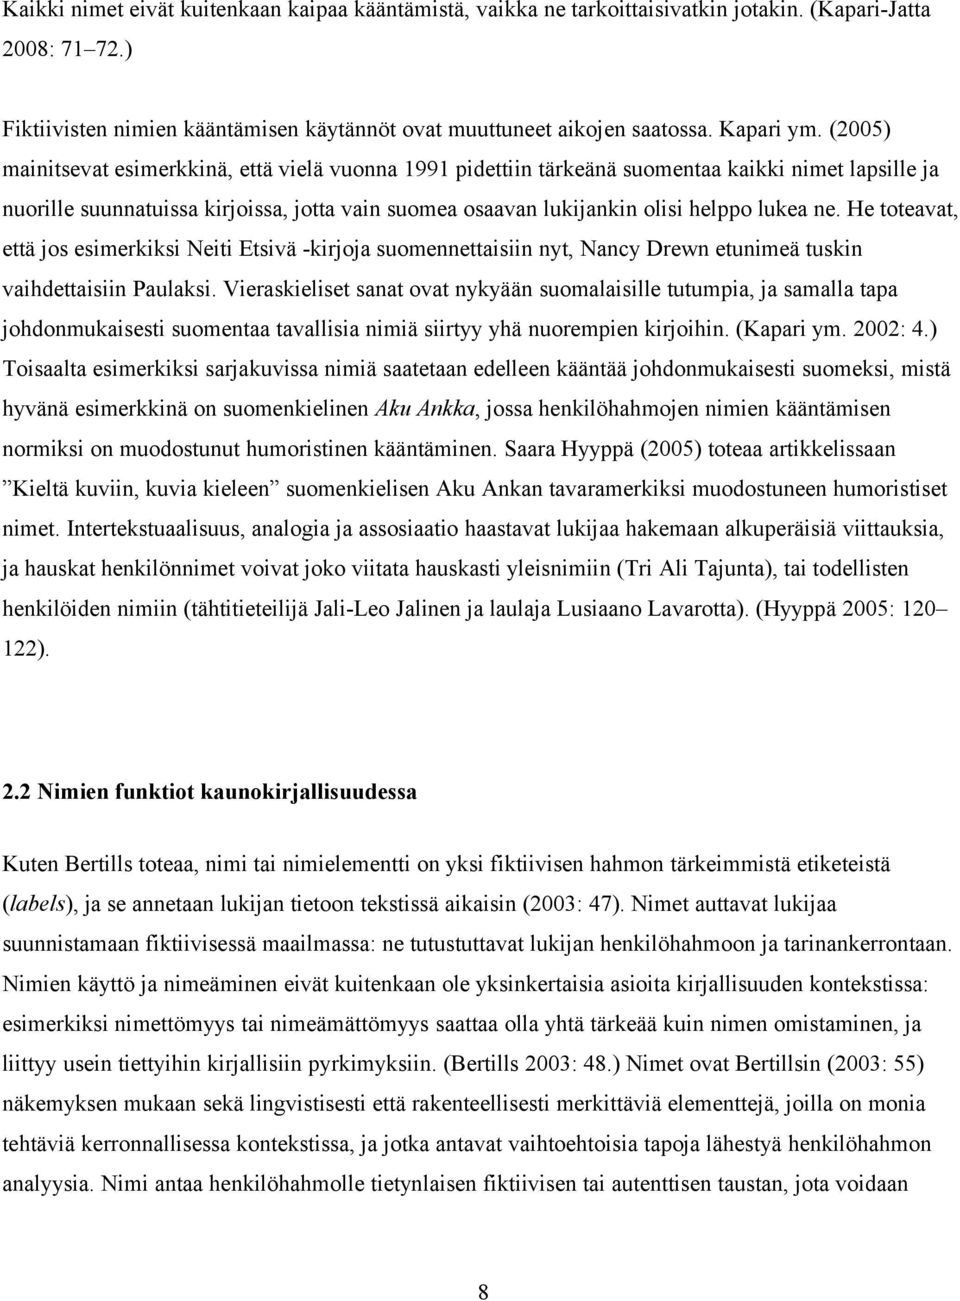 (2005) mainitsevat esimerkkinä, että vielä vuonna 1991 pidettiin tärkeänä suomentaa kaikki nimet lapsille ja nuorille suunnatuissa kirjoissa, jotta vain suomea osaavan lukijankin olisi helppo lukea